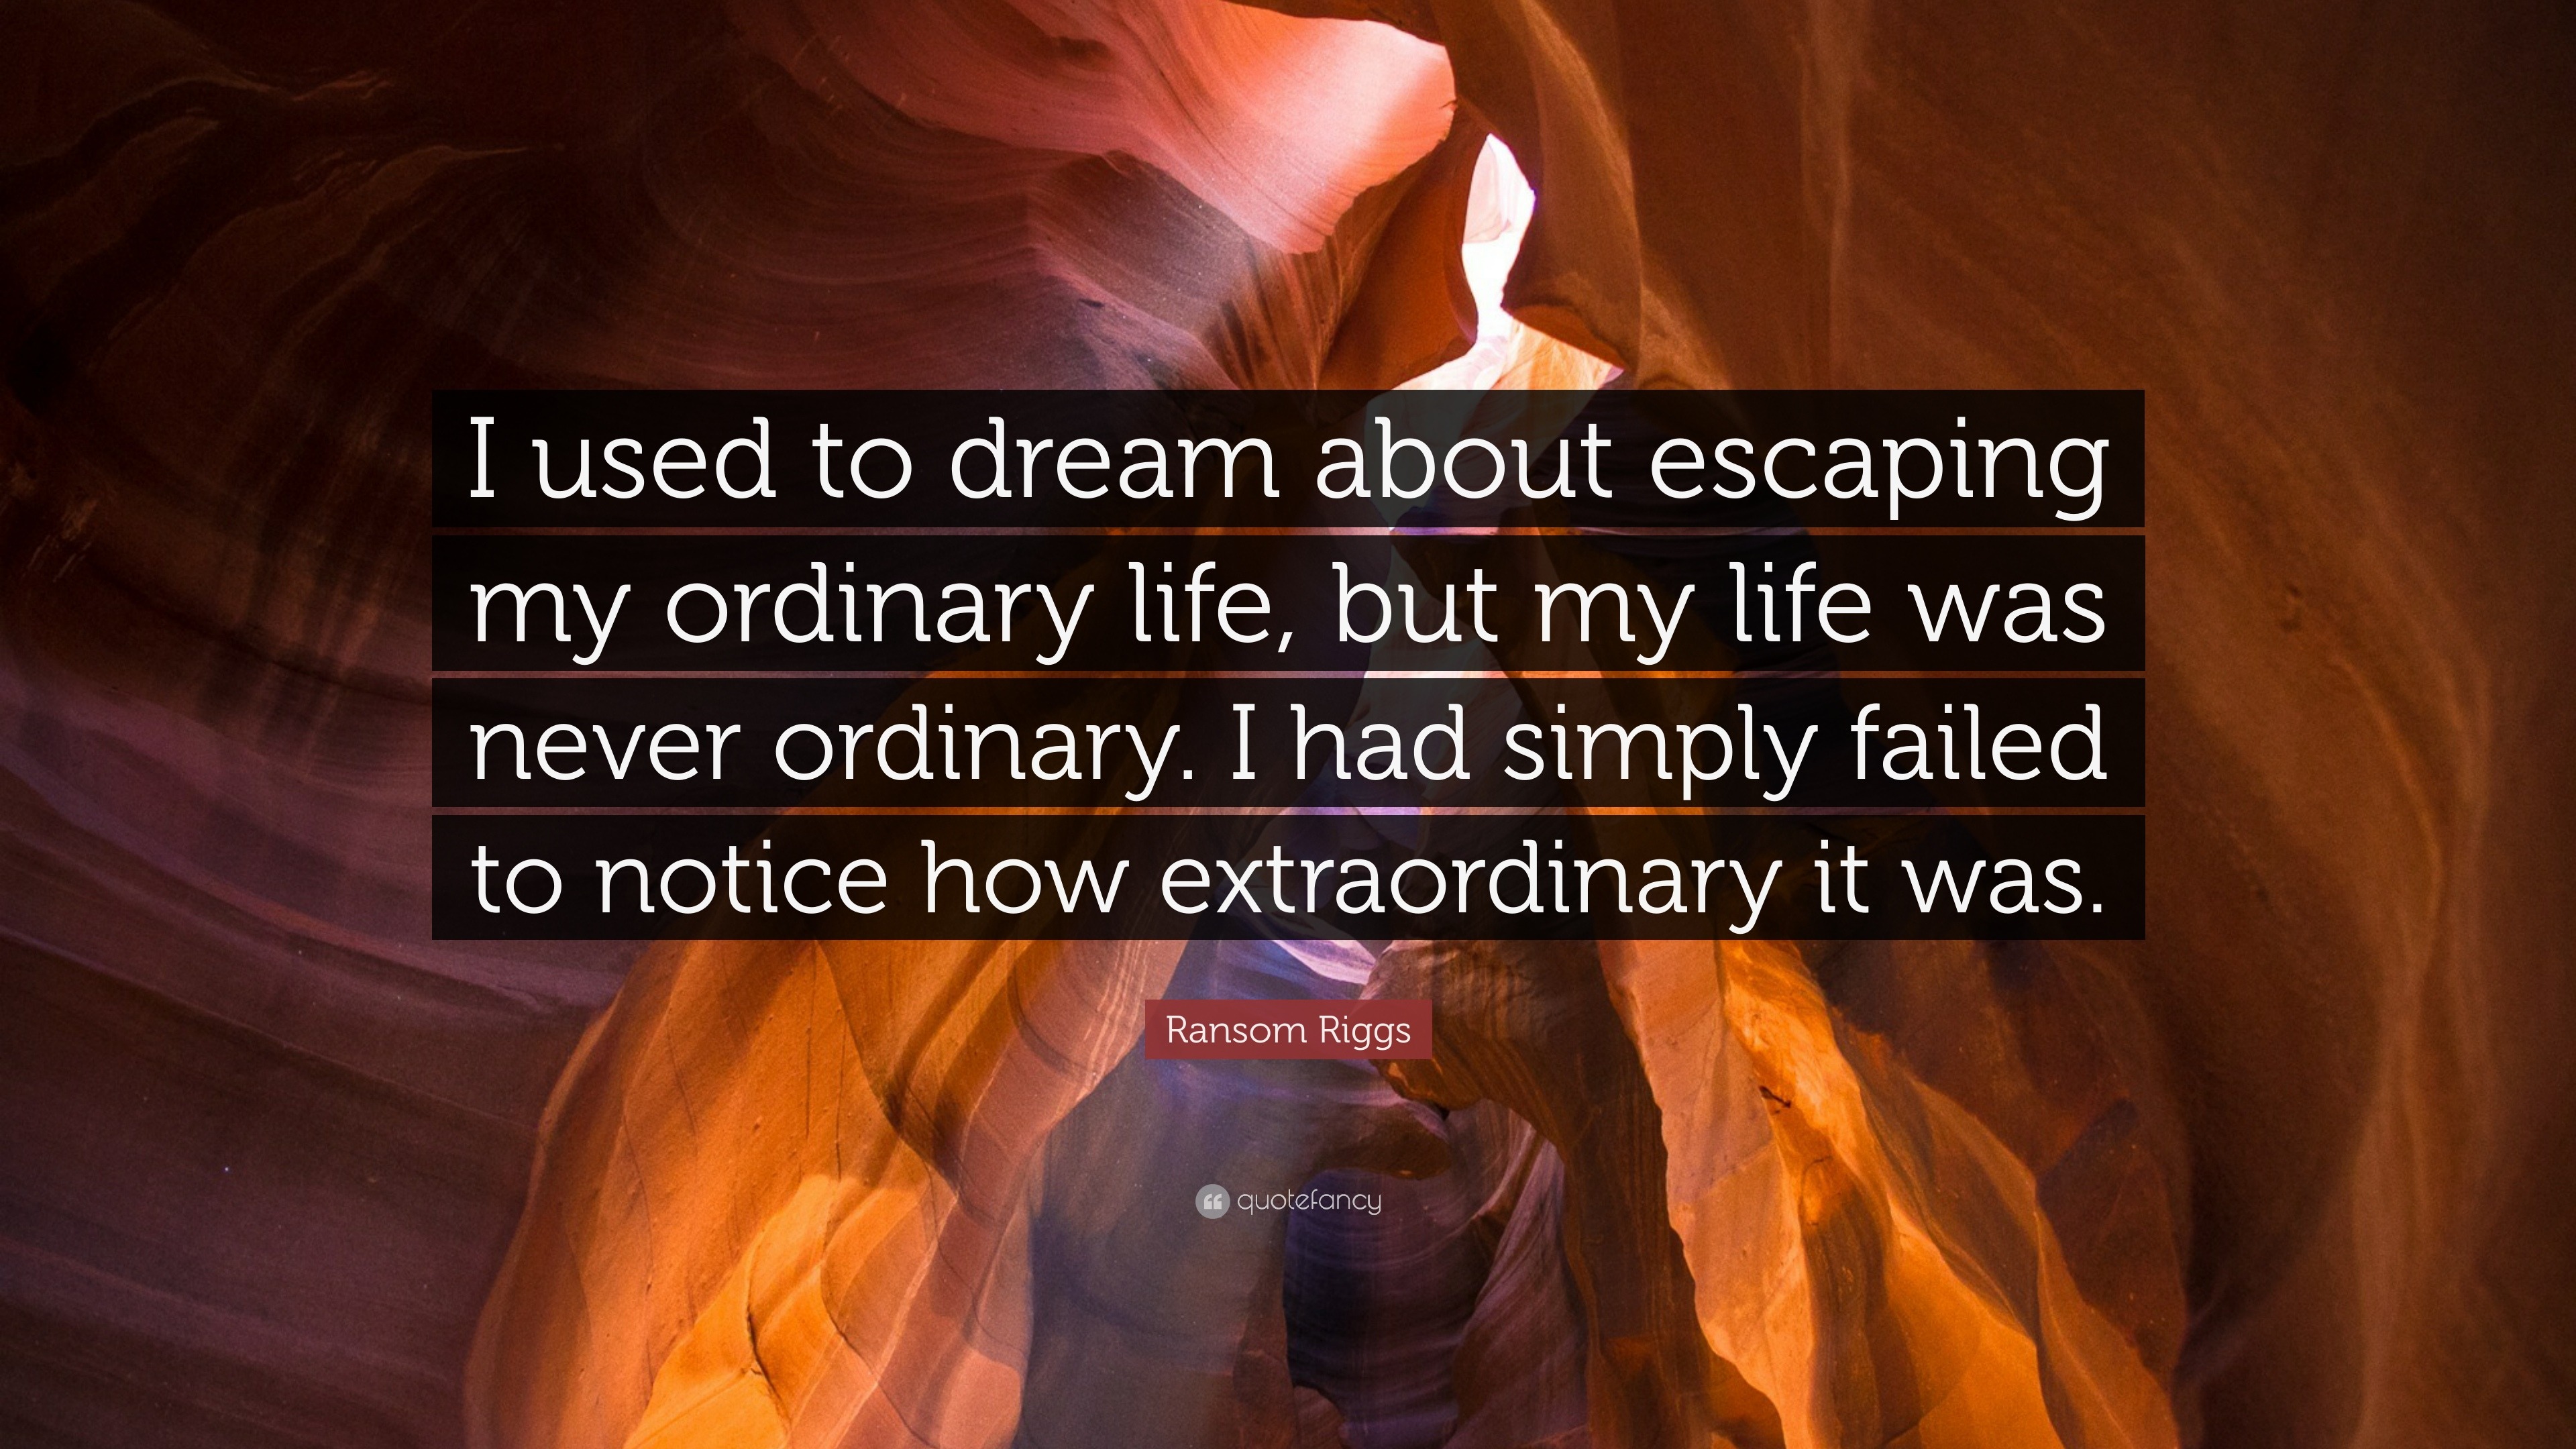 dream interpretation quotes